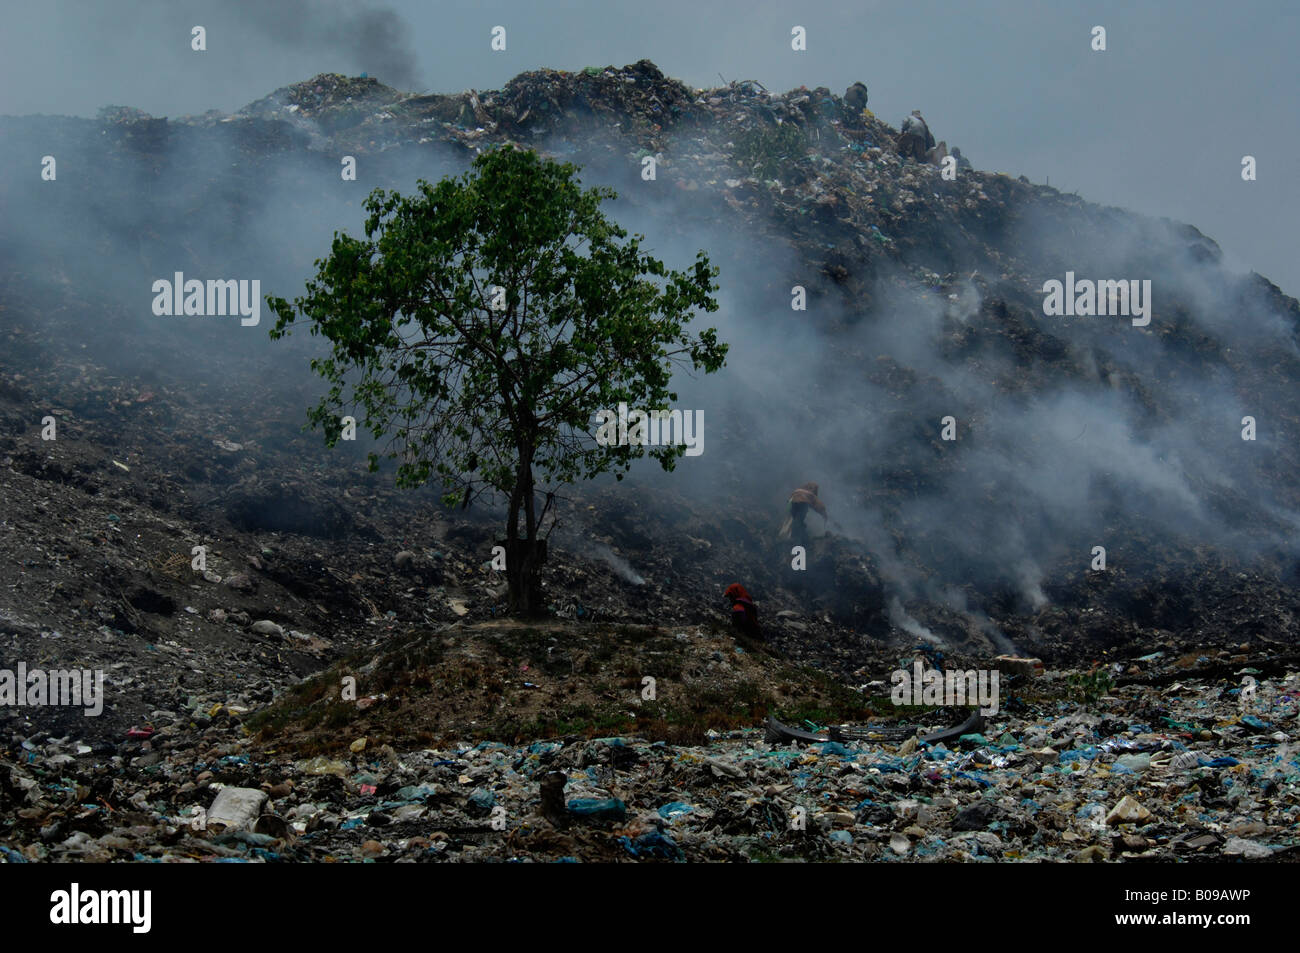 stung meanchey rubbish dump, phnom penh cambodia Stock Photo